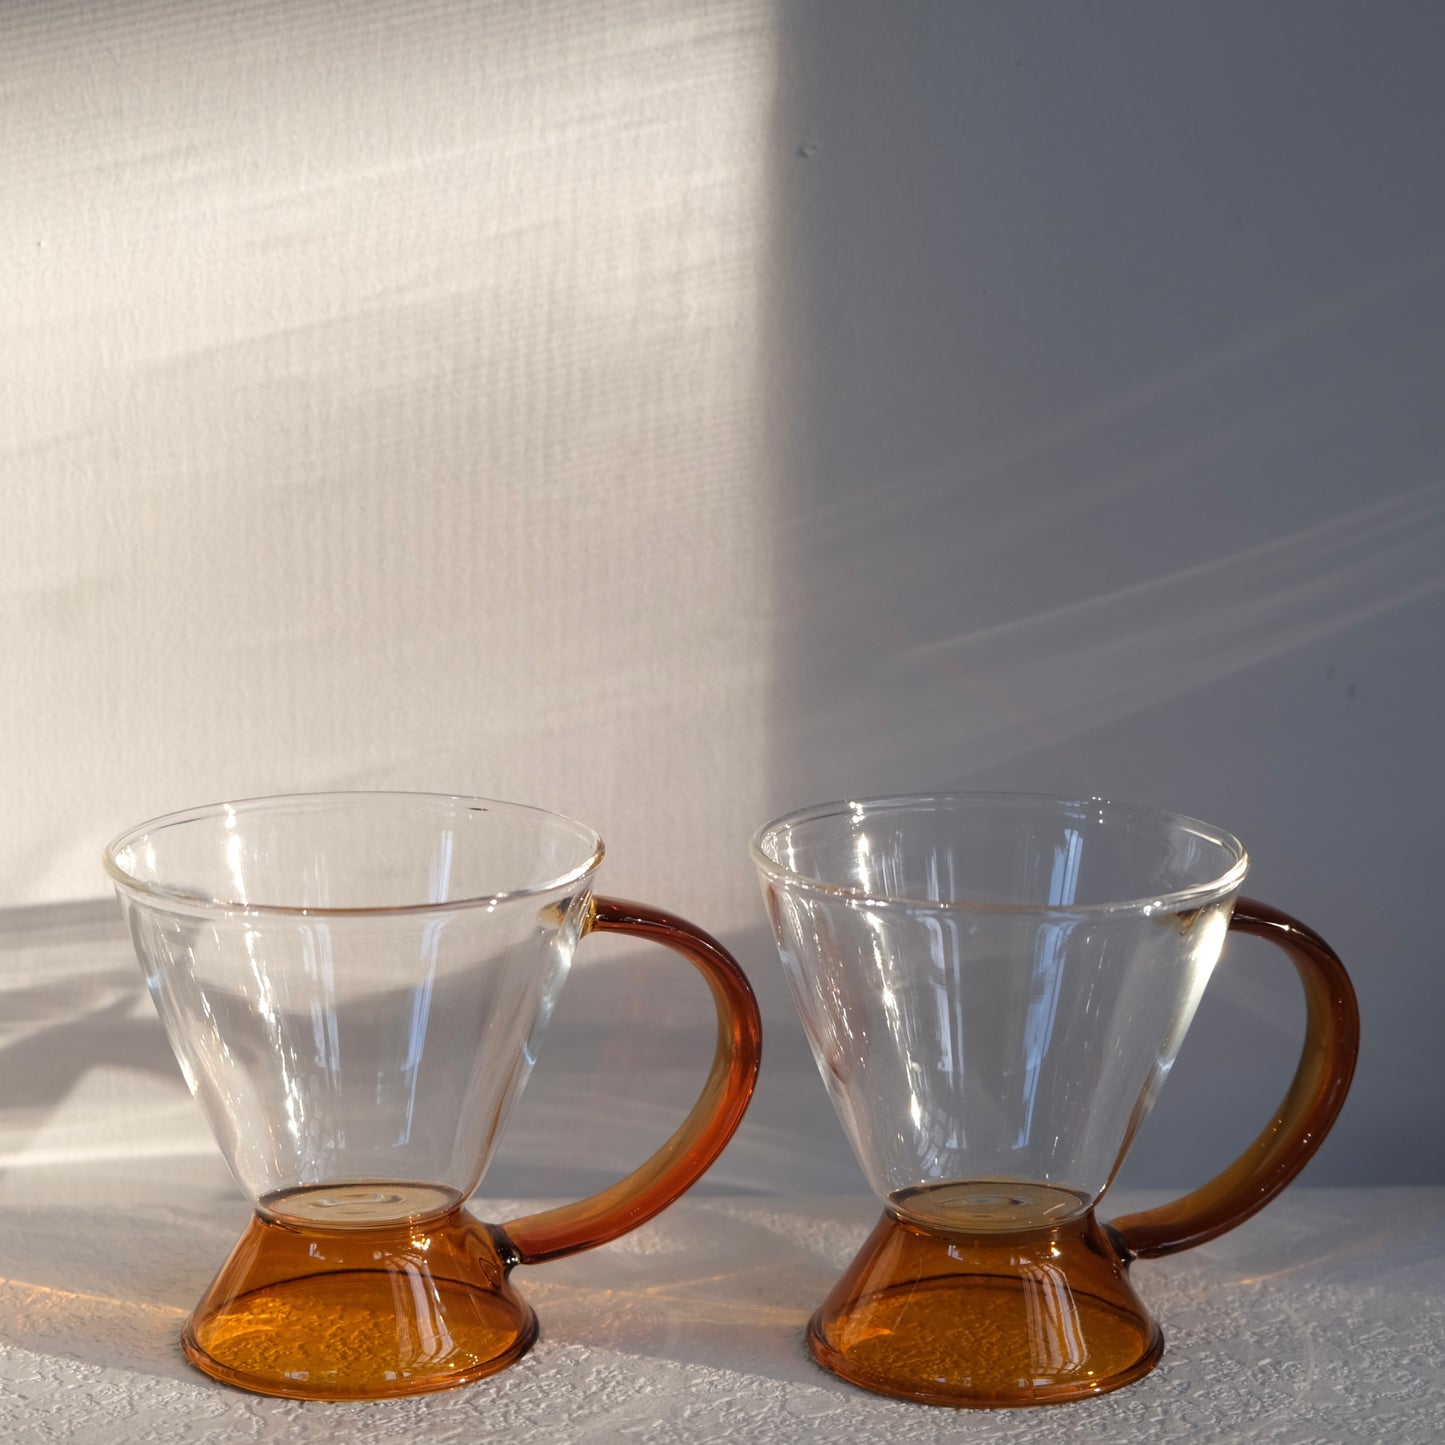 Arancione 2 Cups Tea Set